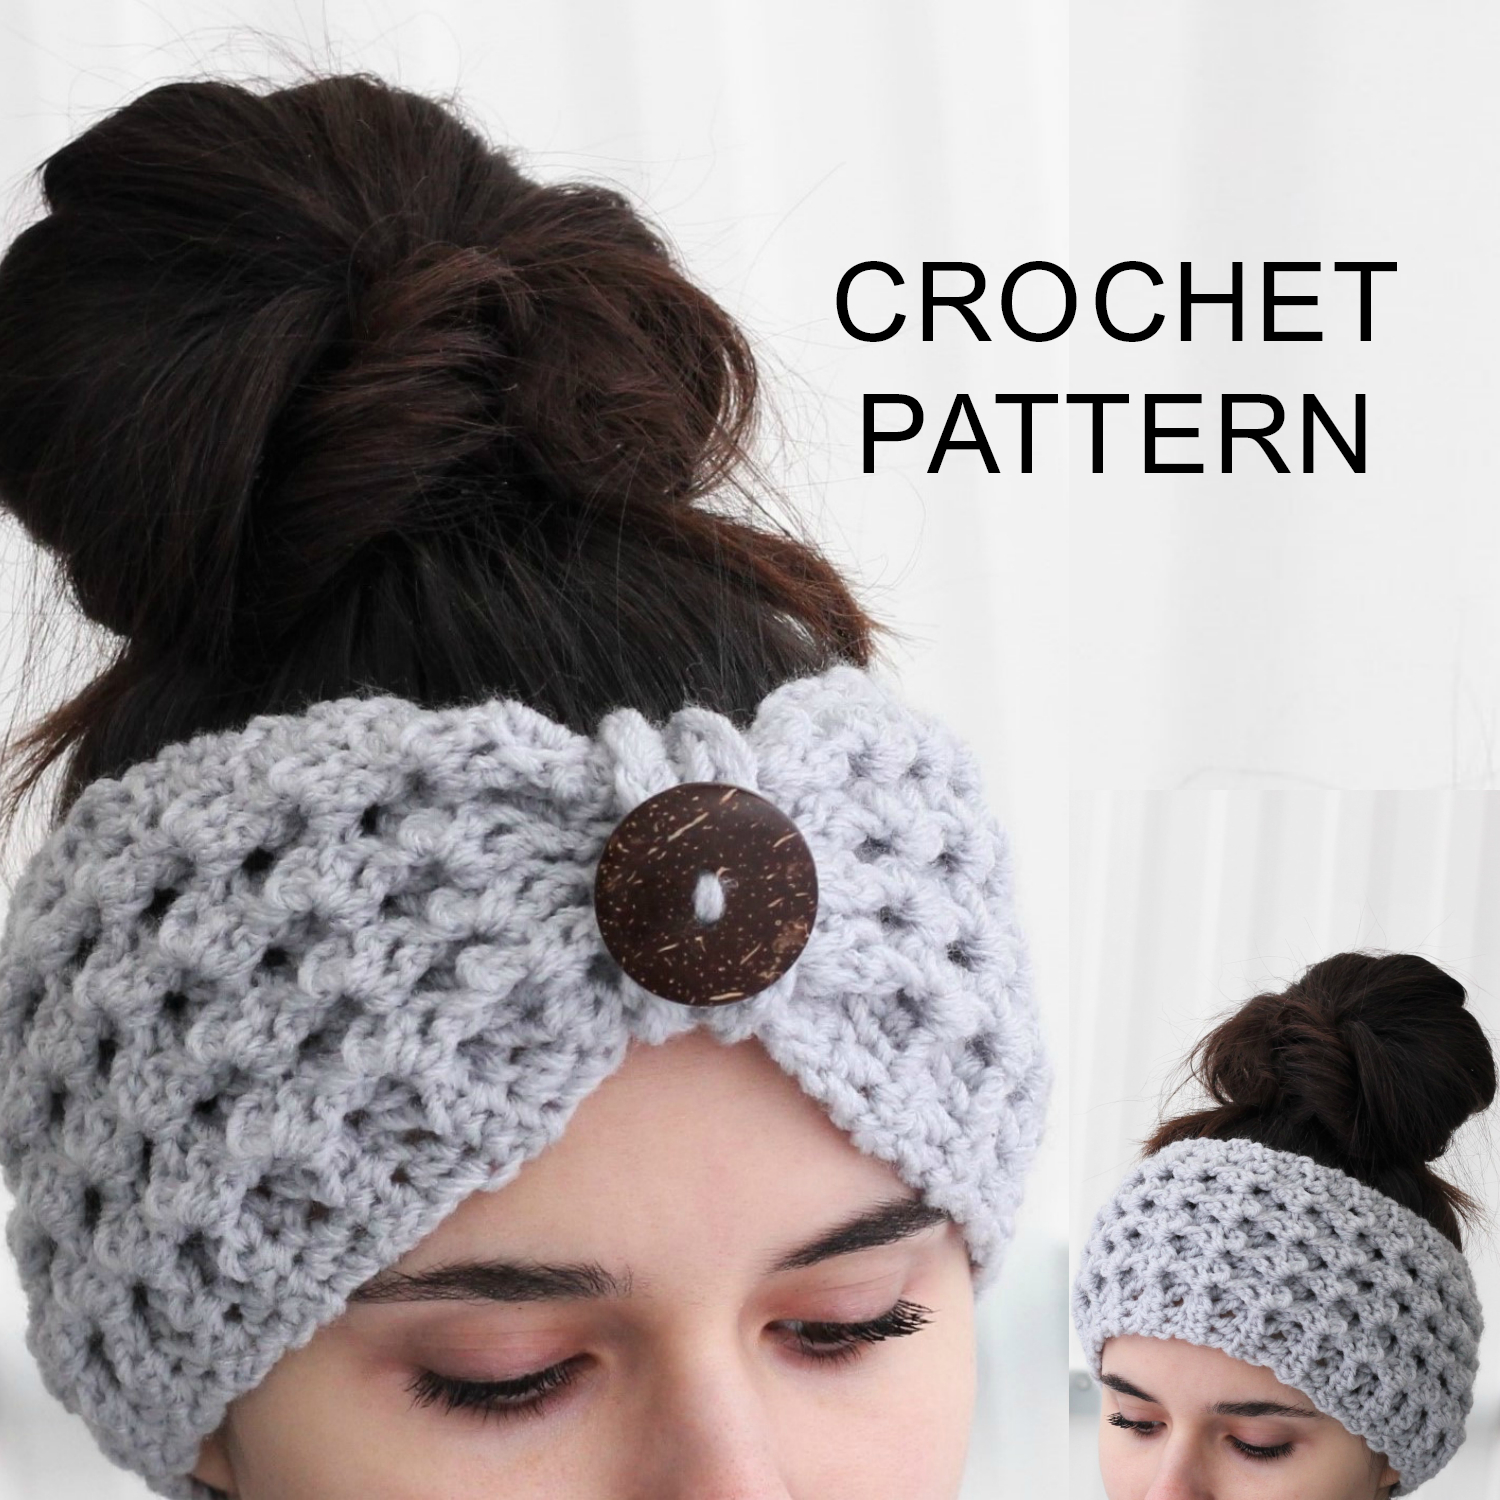 Crochet Headband With Flower Pattern Lida Headband Ear Warmer Crochet Pattern Pdf The Easy Design